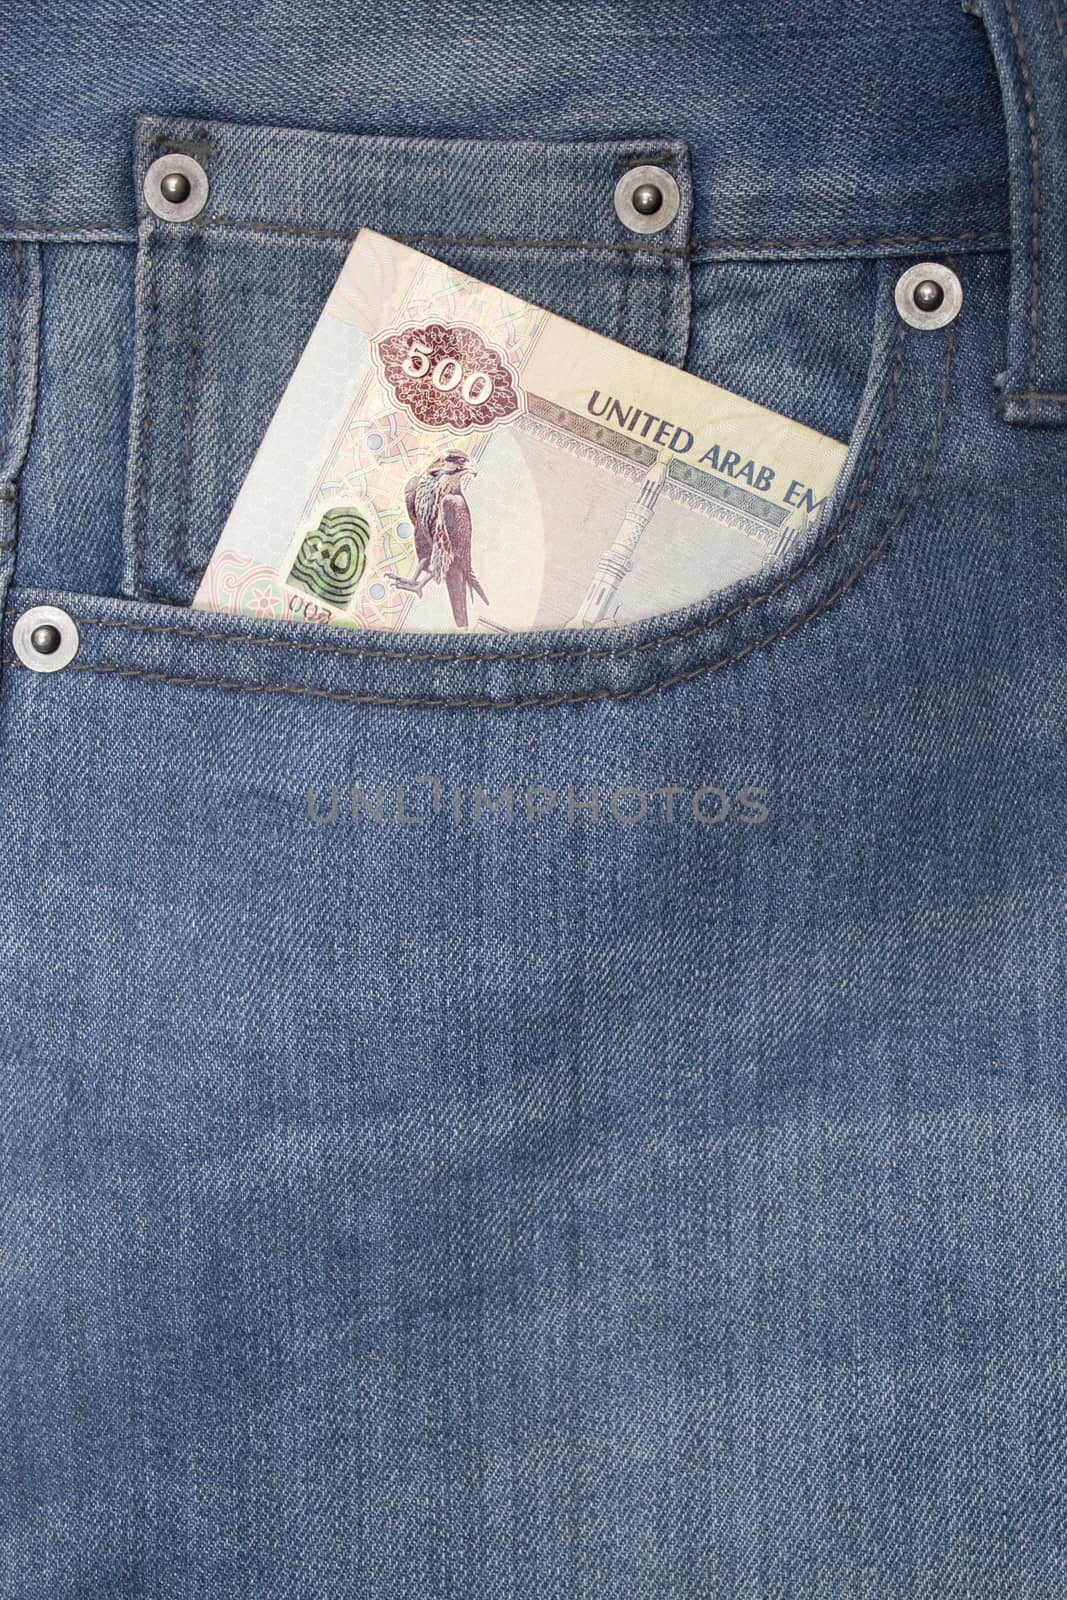 Denim jeans pocket with five hundred dirhams